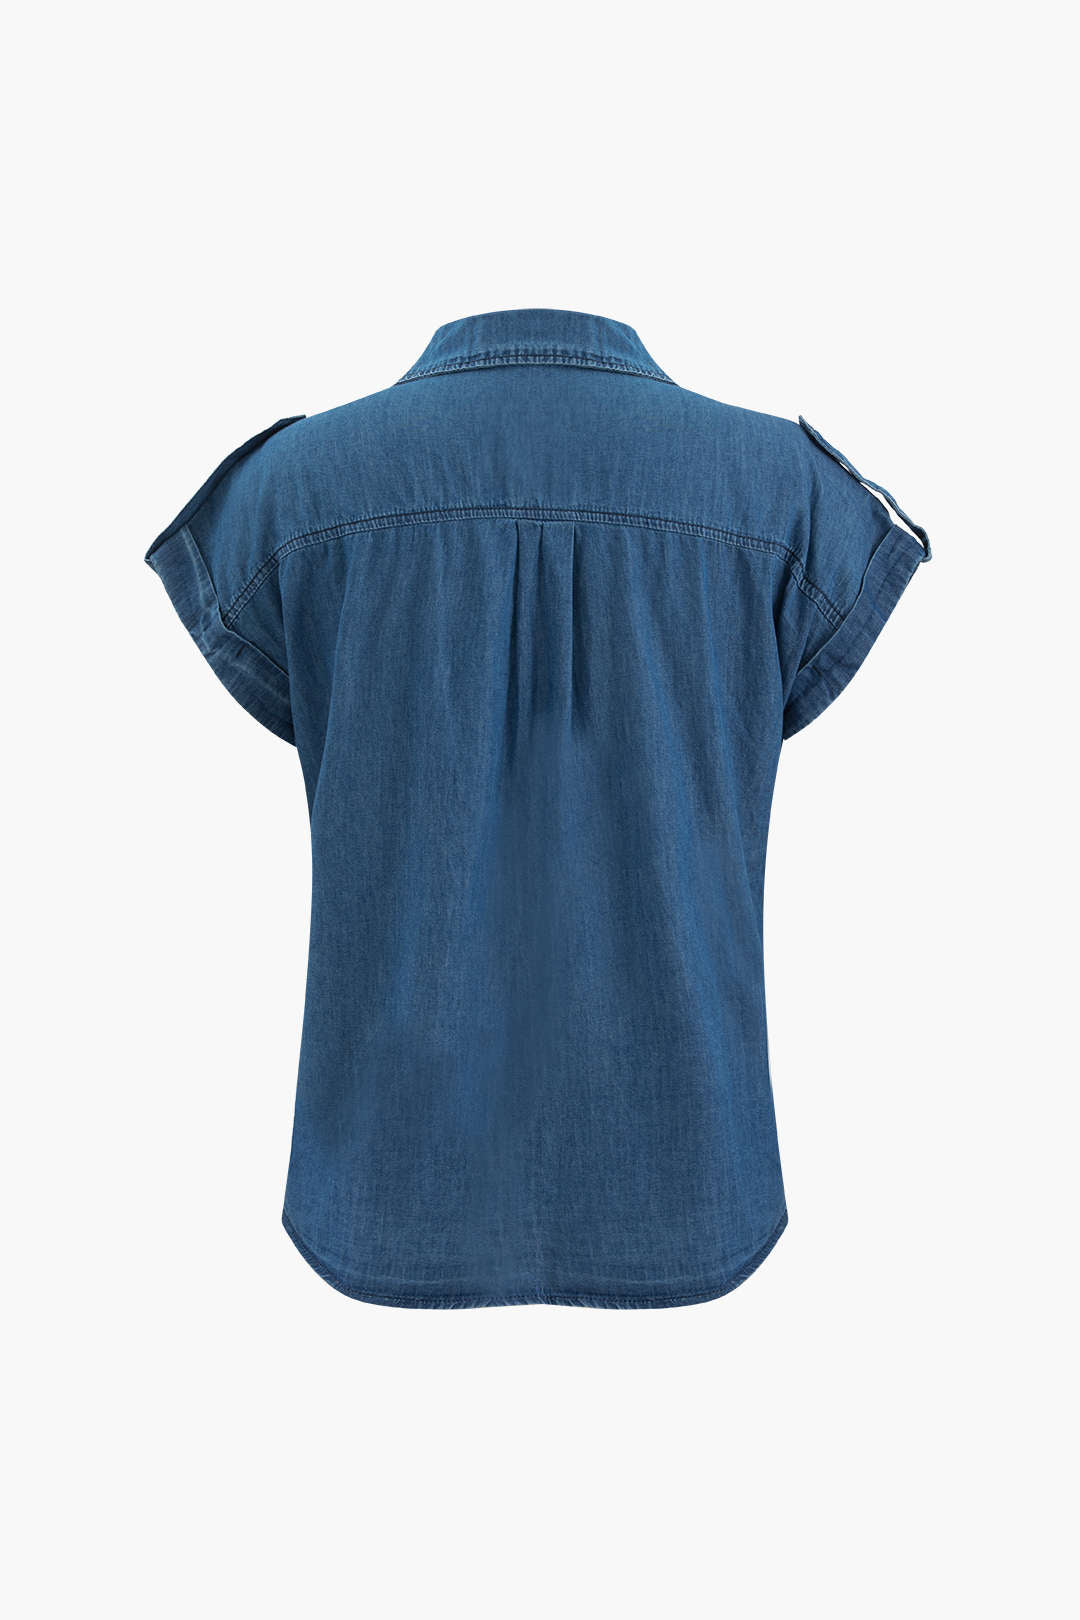 Cap Sleeve Chest Pocket Denim Shirt